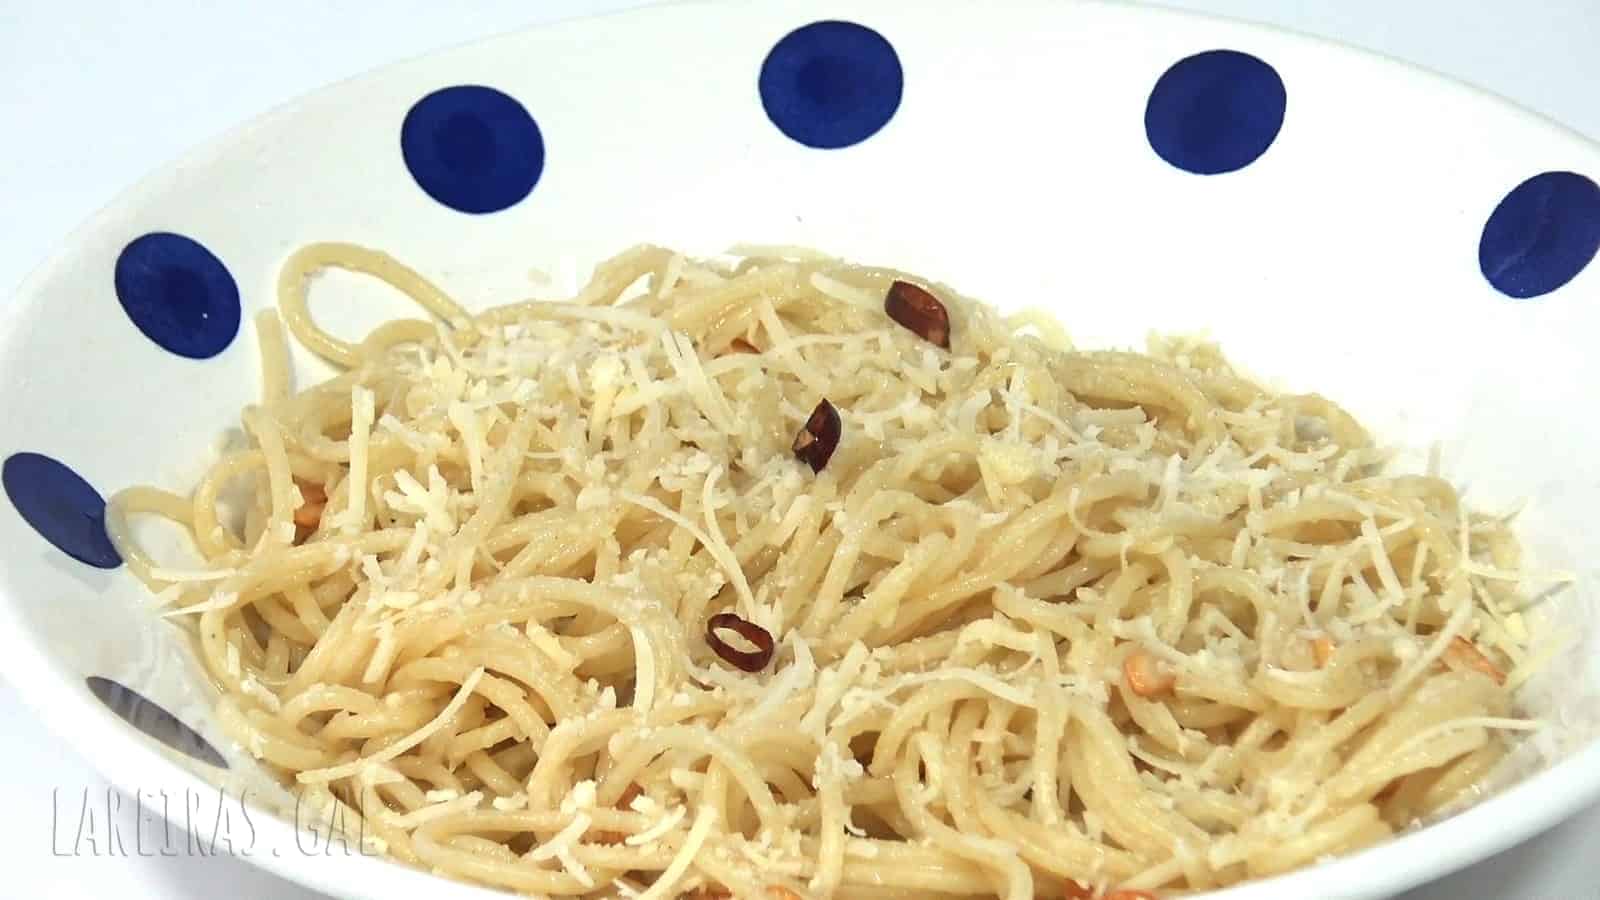 Spaghetti aglio e olio (garlic and oil)